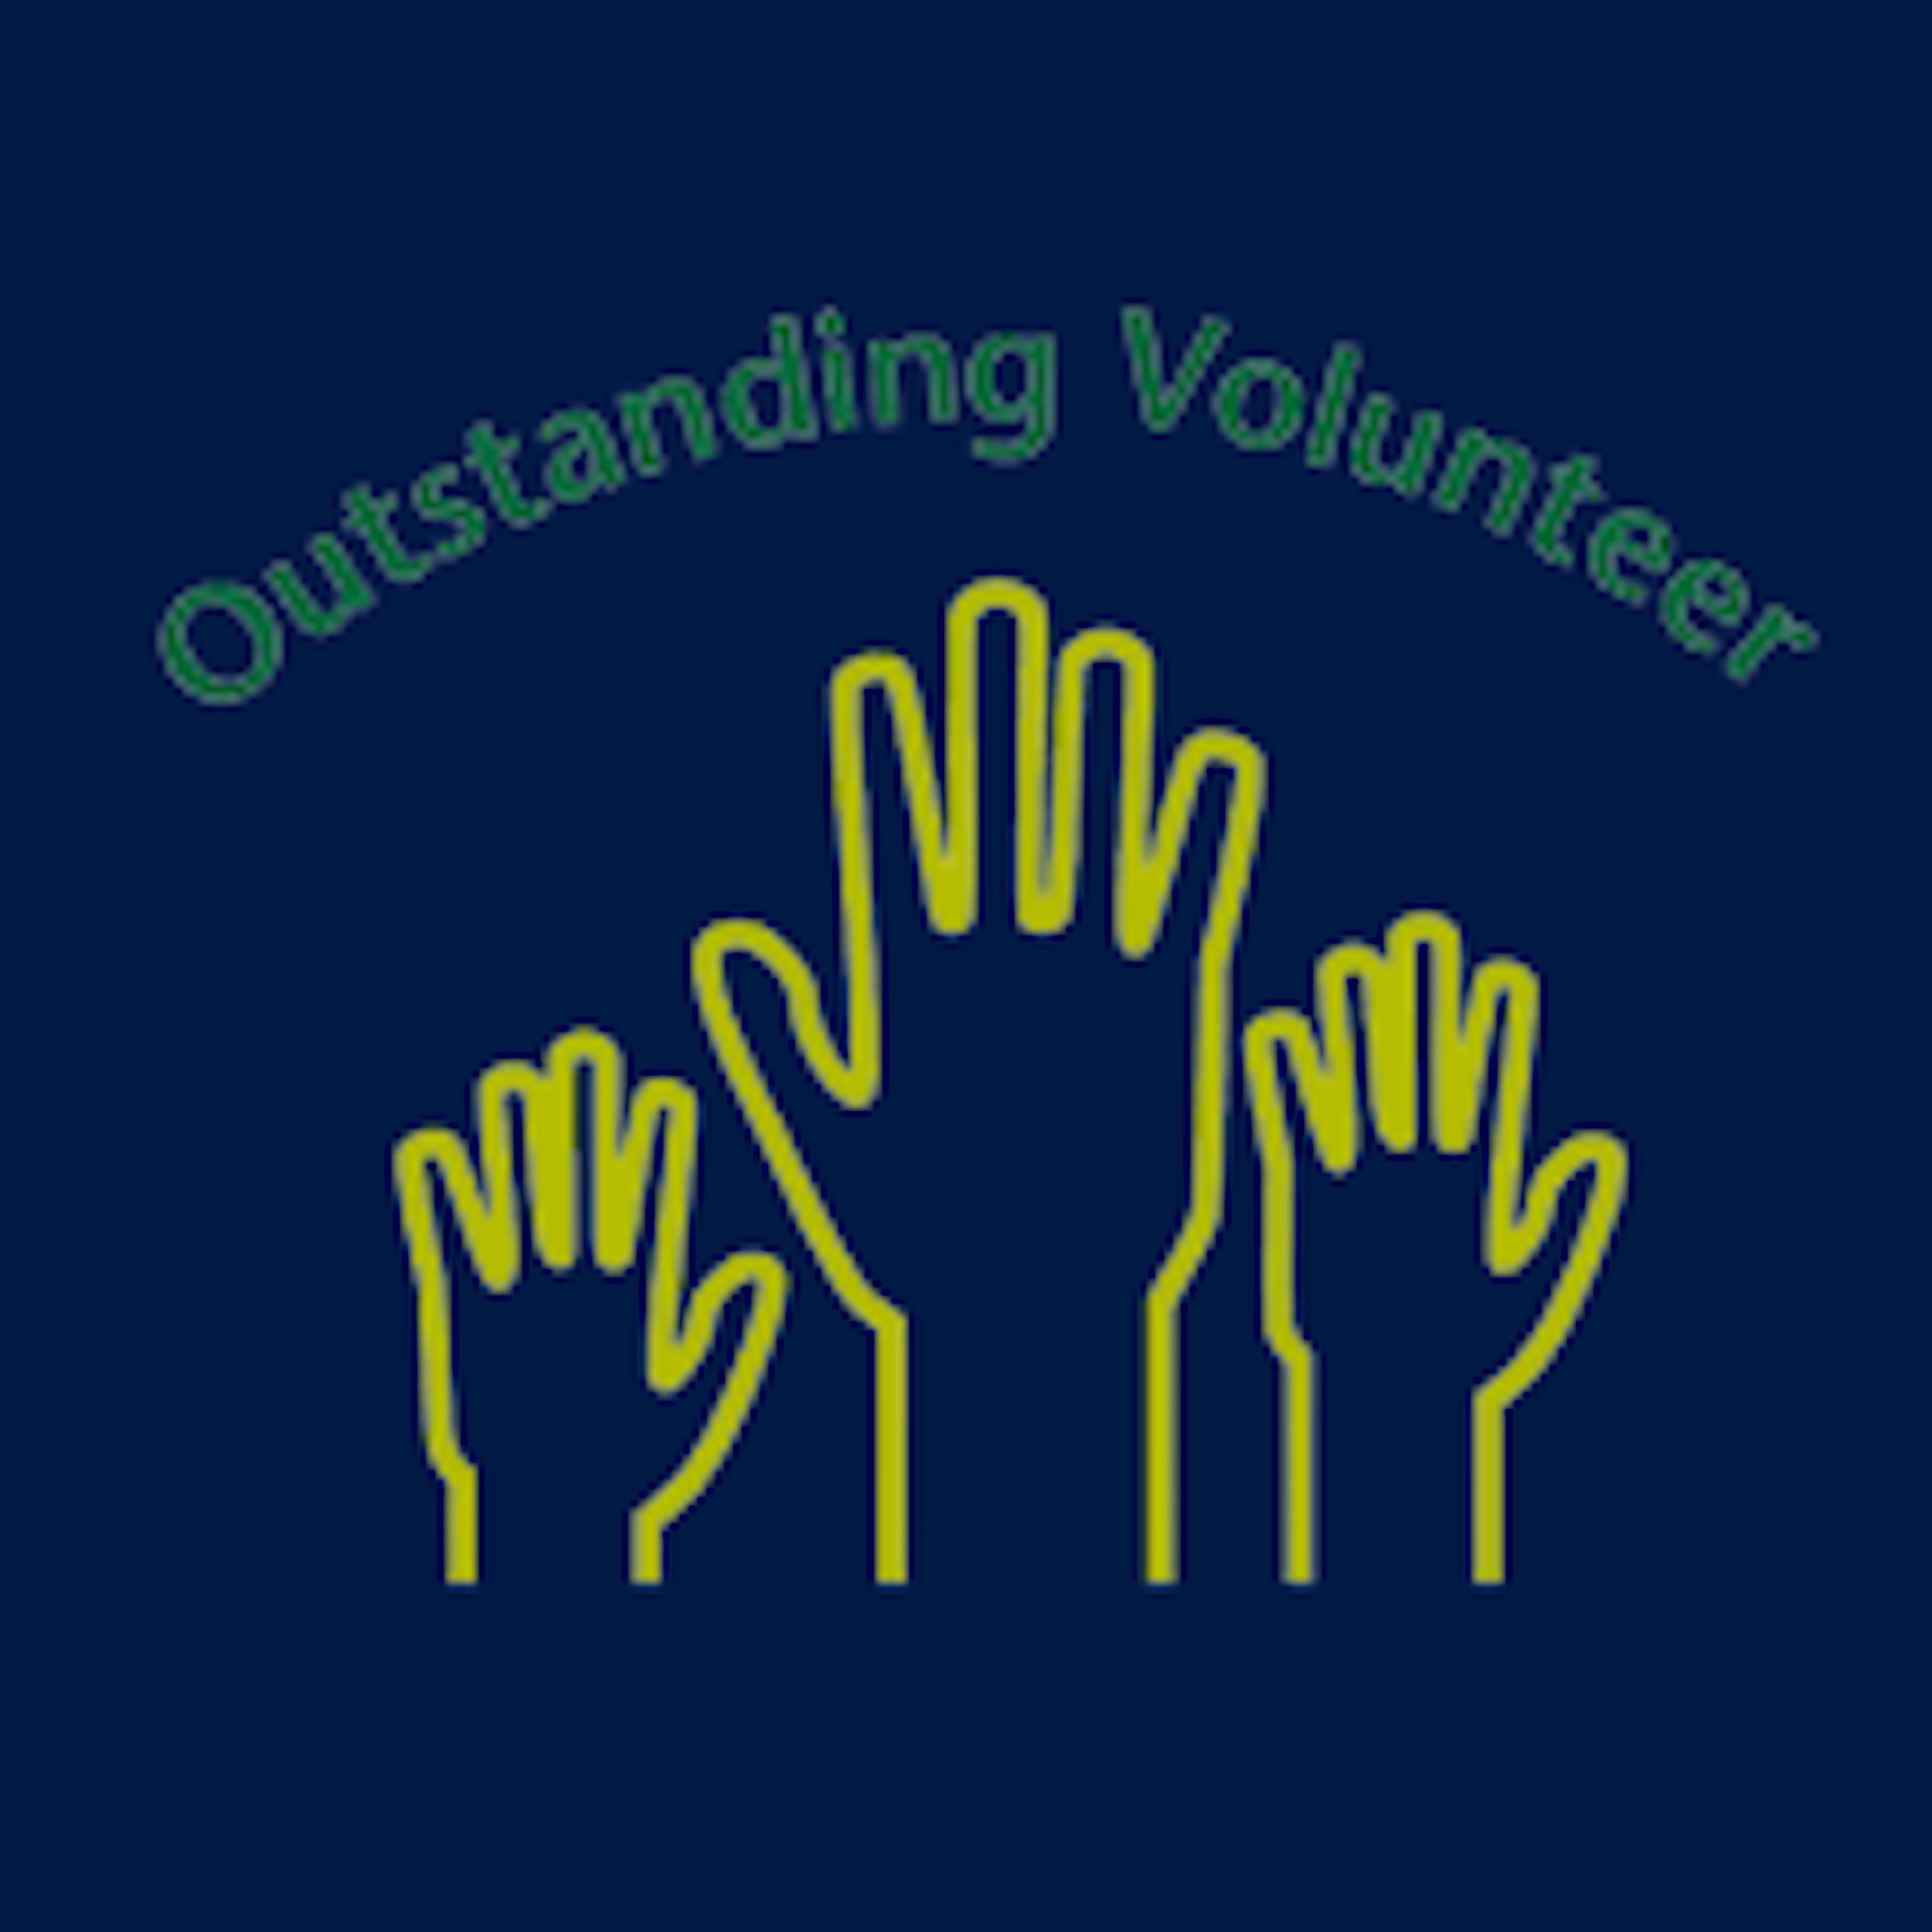 Outstanding Volunteer of the Year 2017